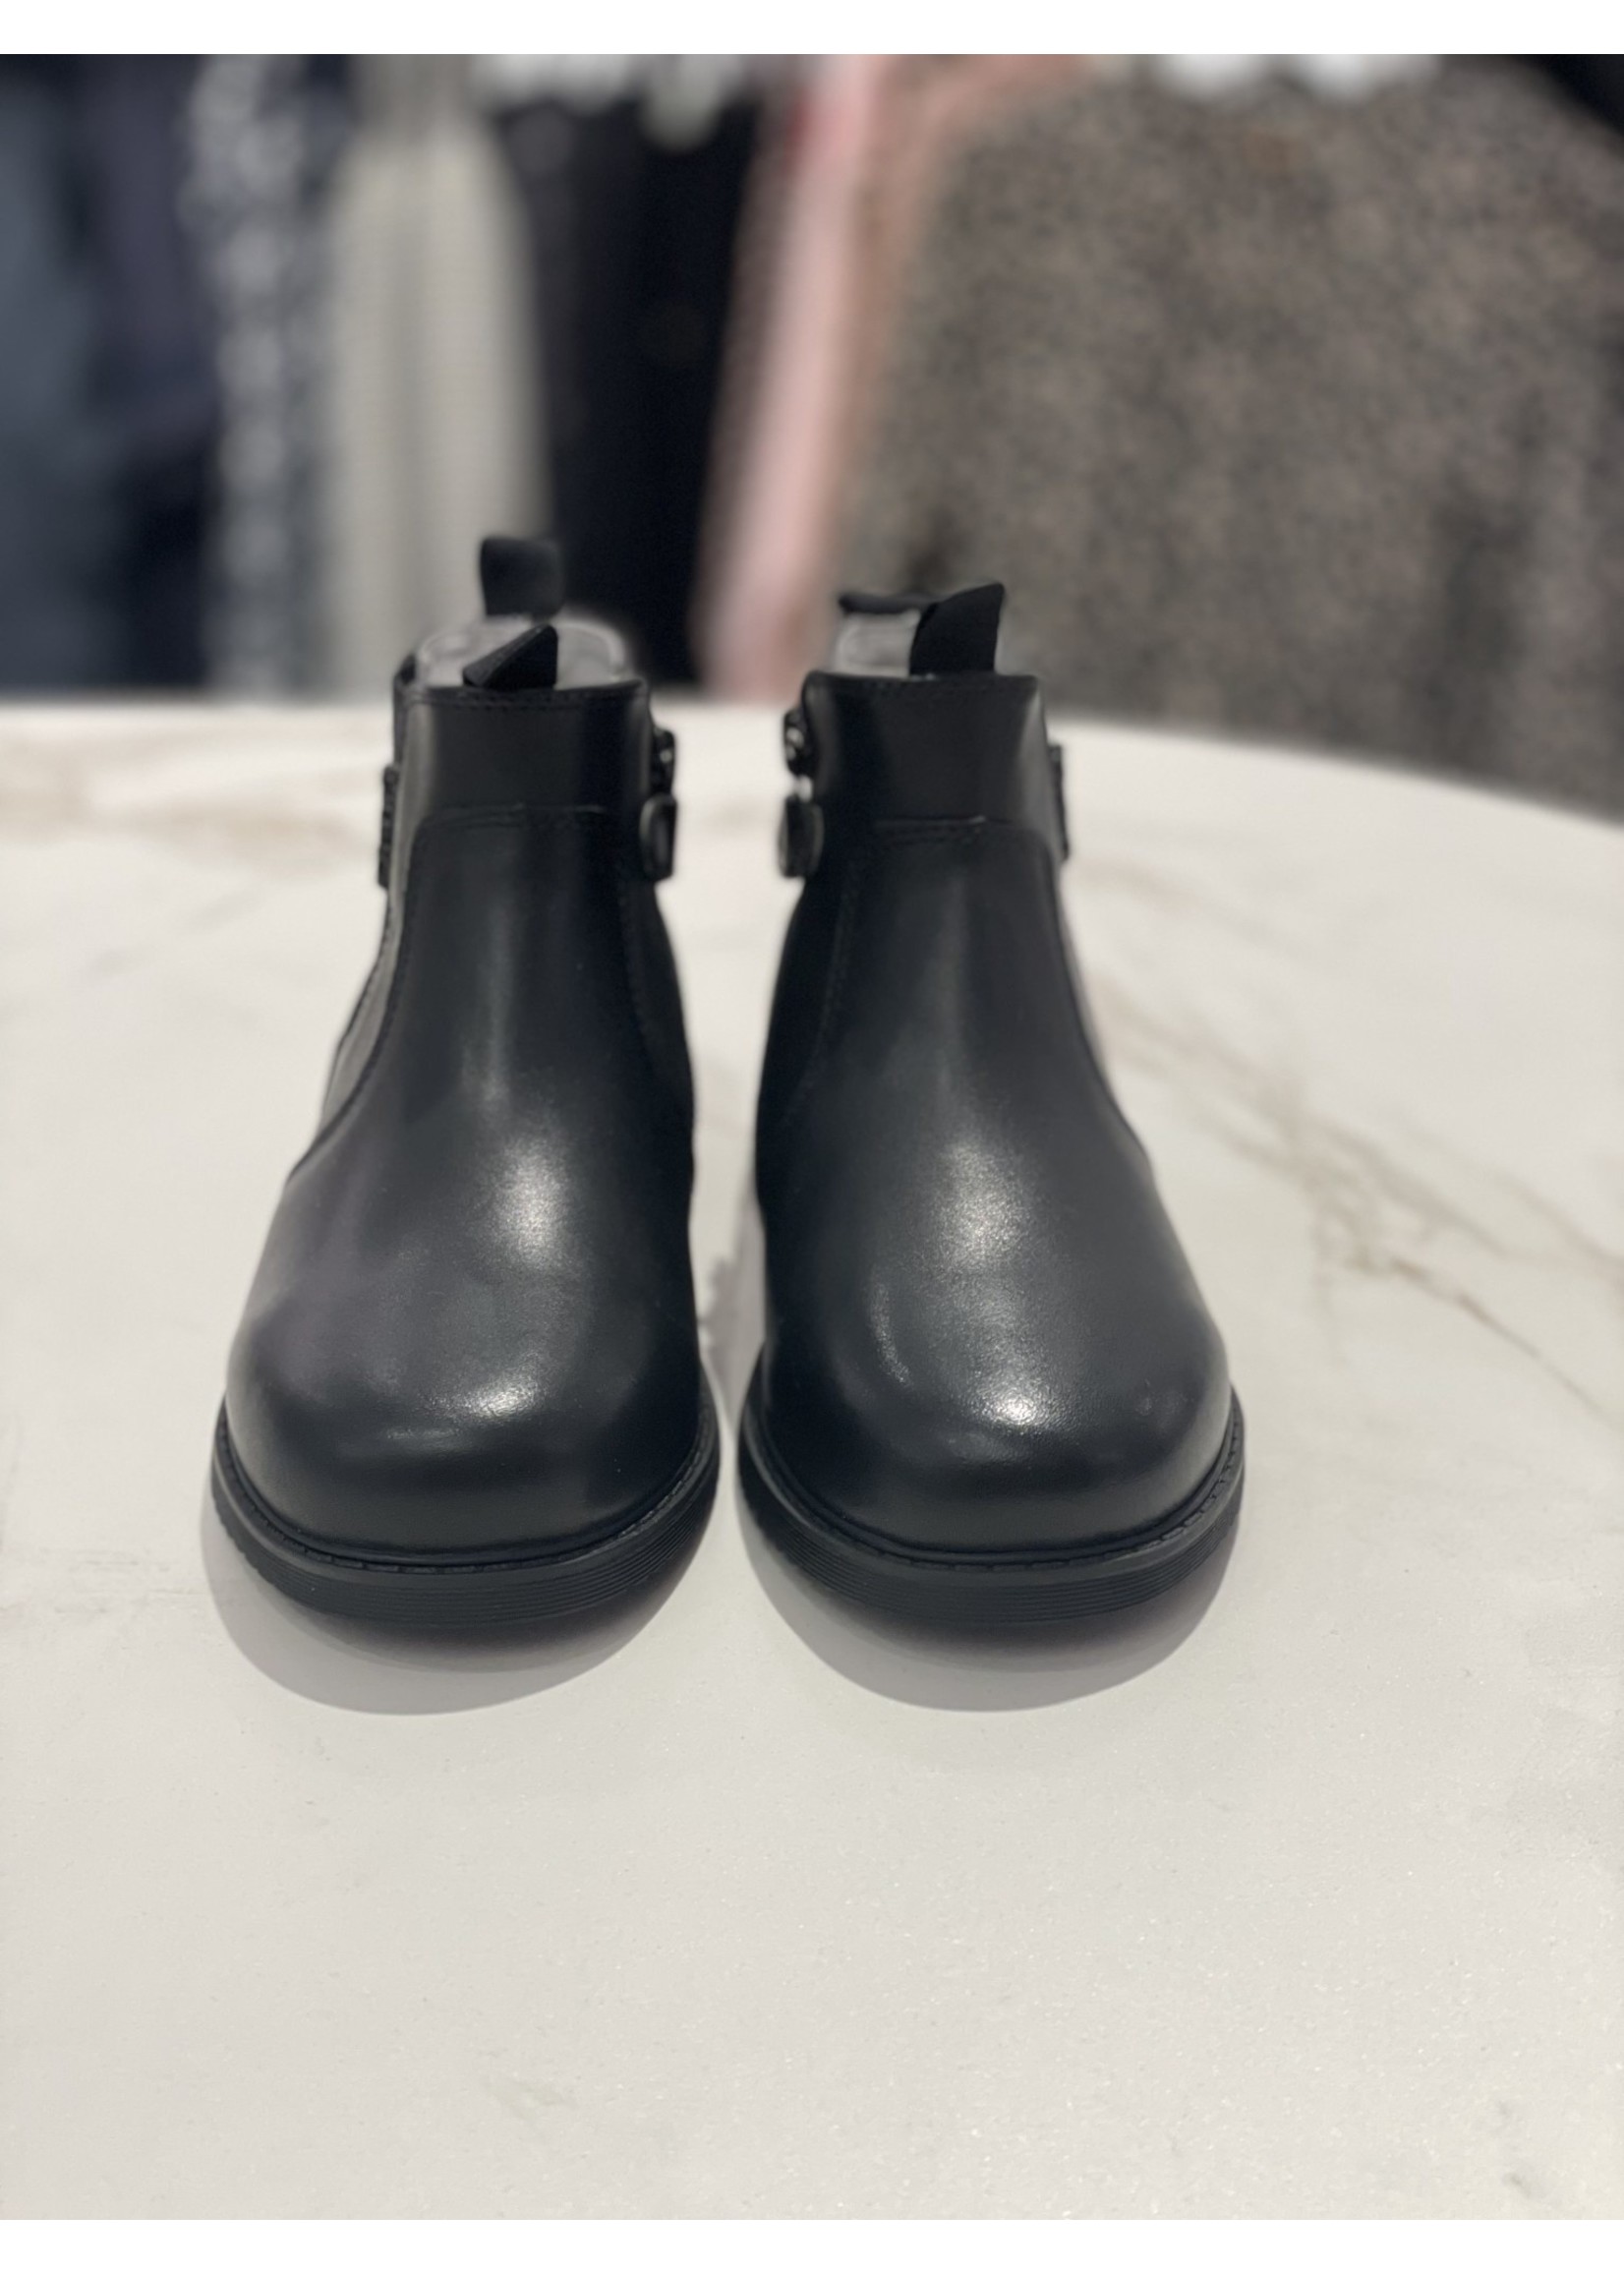 Liu Jo Liu Jo boots stappers calfs leather black - pat 440